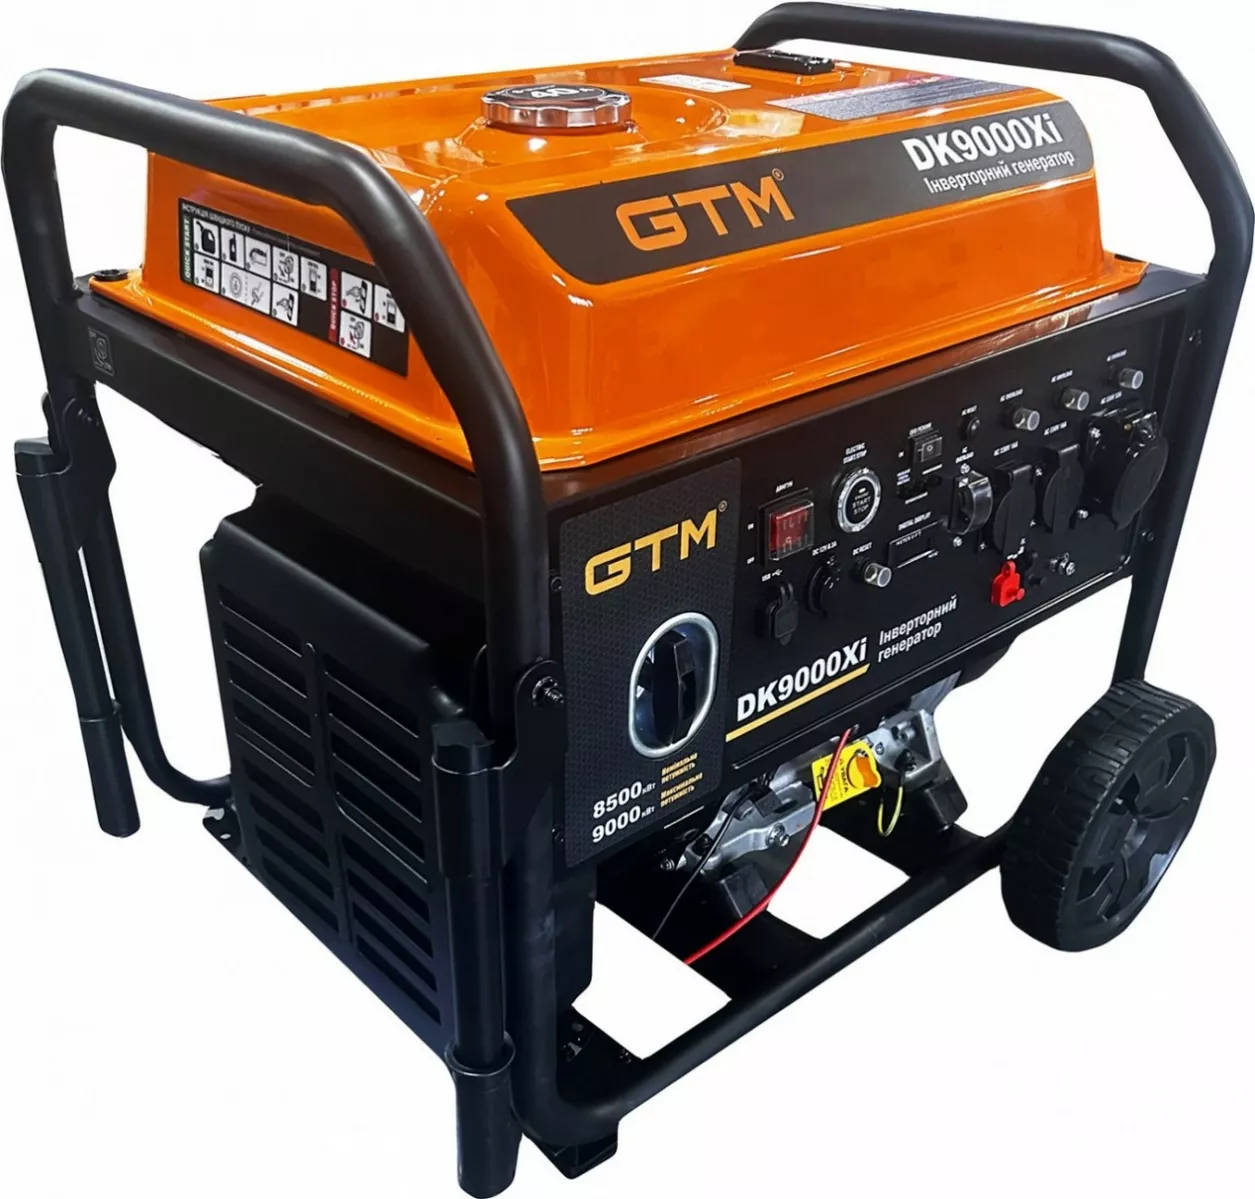 Инструкция генератор GTM DK9000Xi